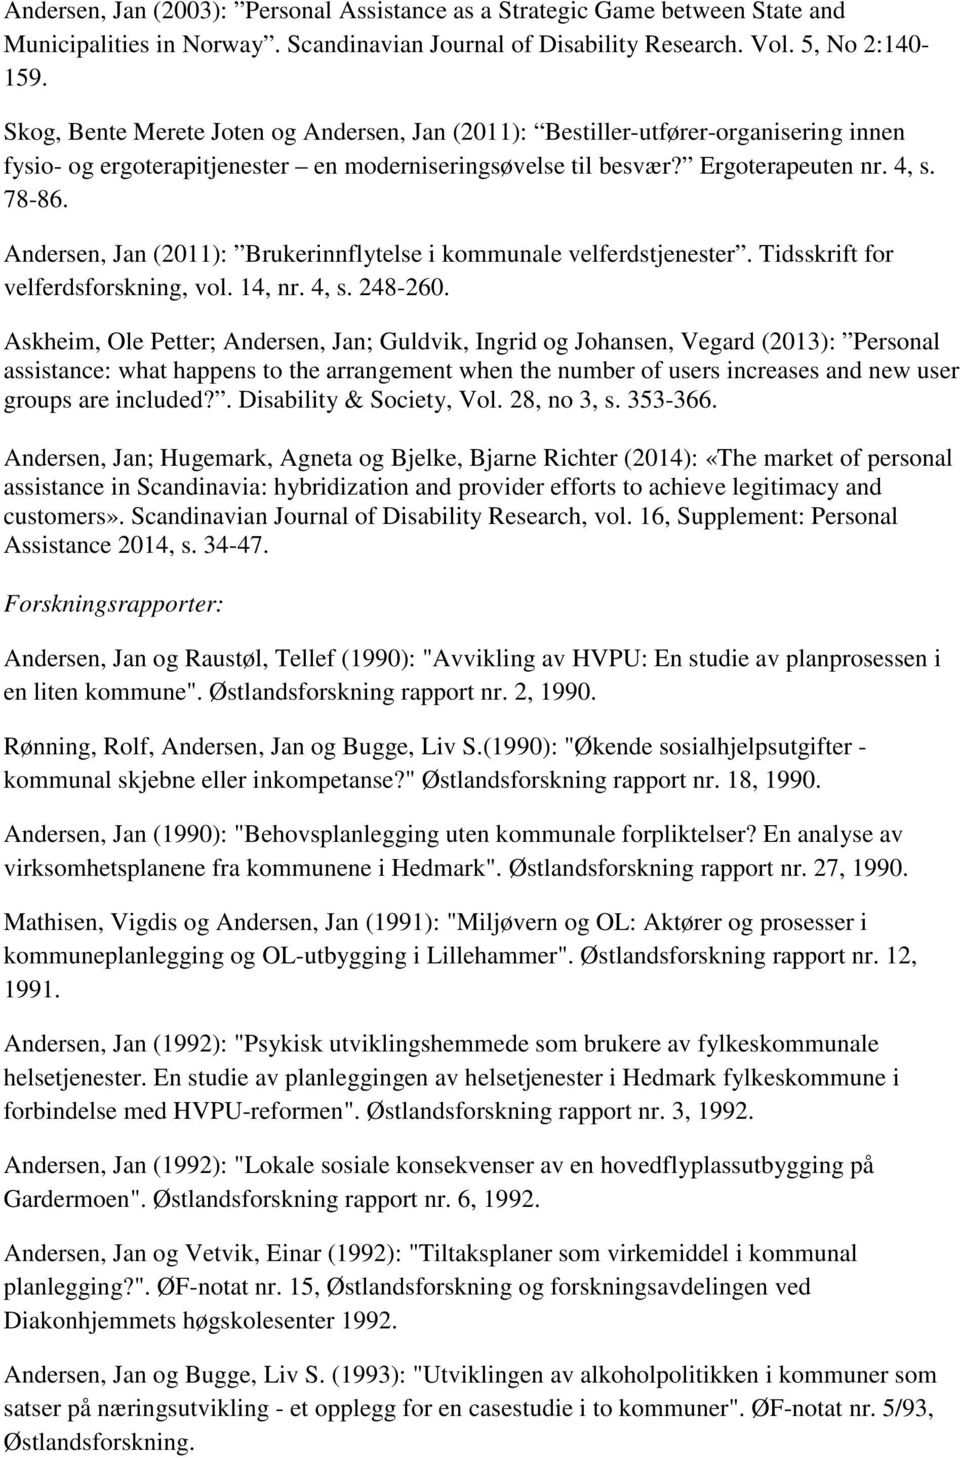 Andersen, Jan (2011): Brukerinnflytelse i kommunale velferdstjenester. Tidsskrift for velferdsforskning, vol. 14, nr. 4, s. 248-260.